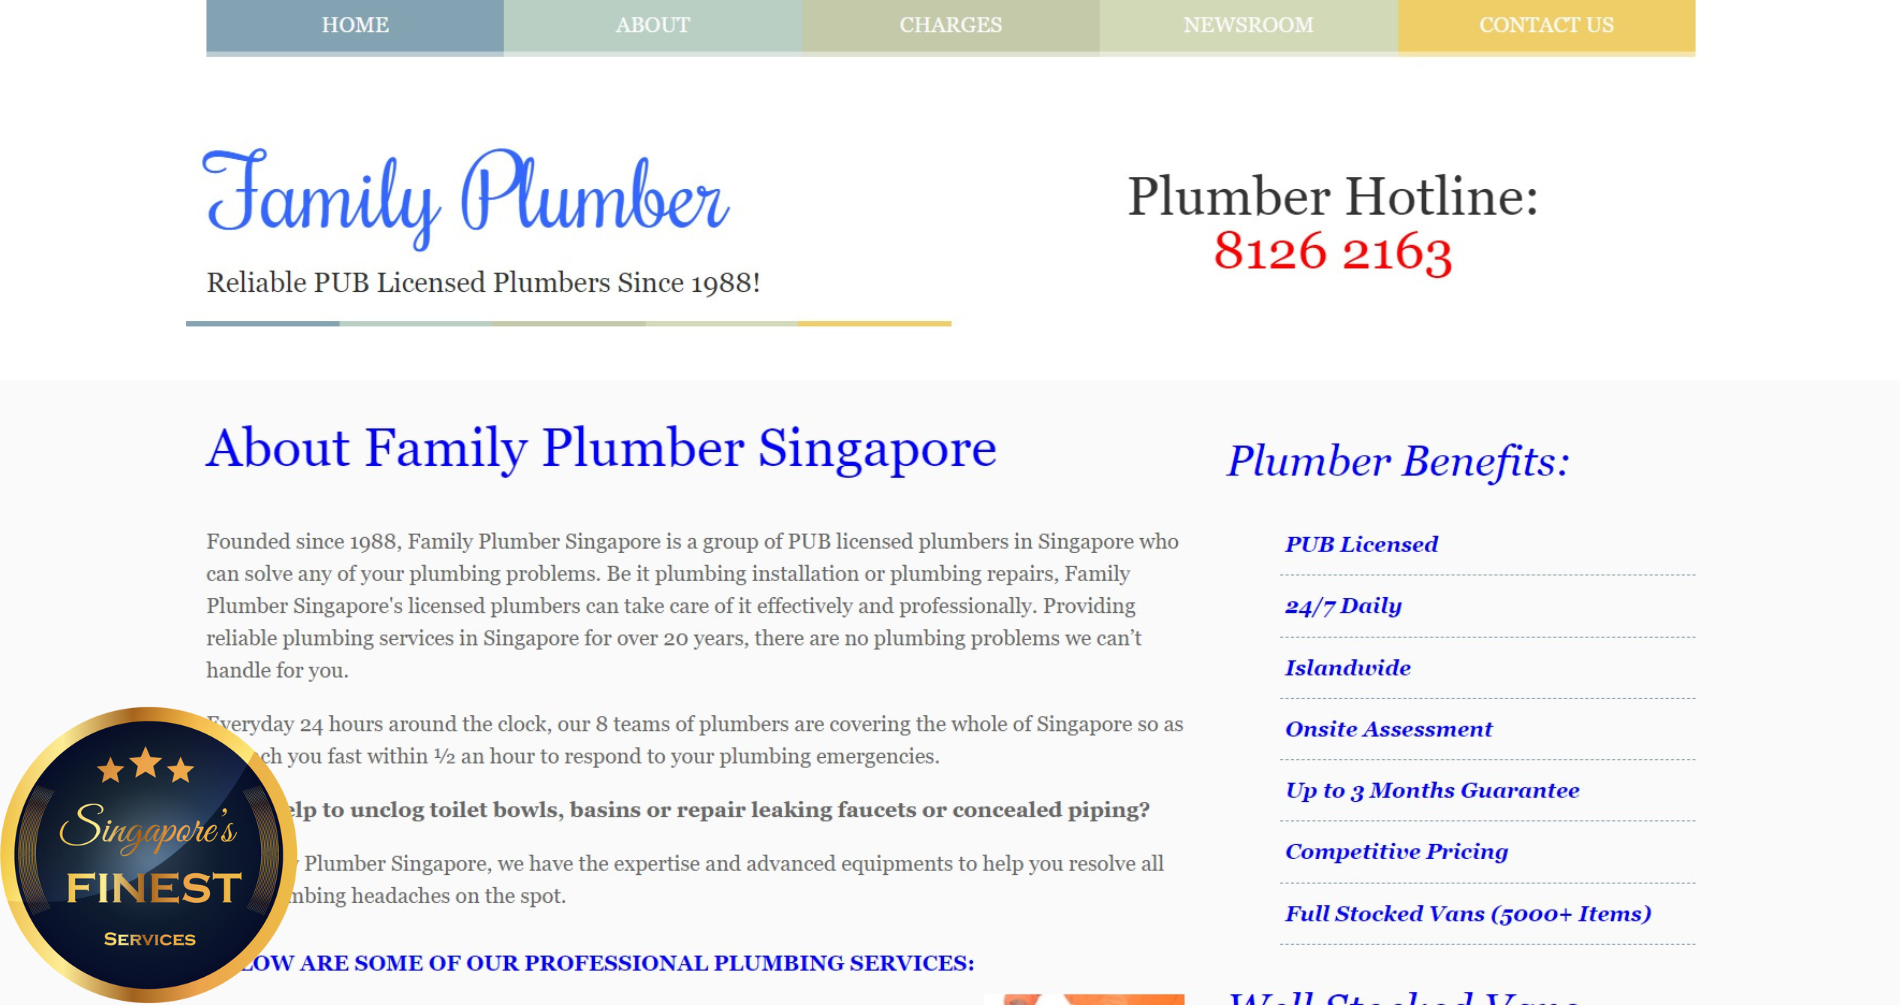 Family Plumber - Licensed Plumber Singapore